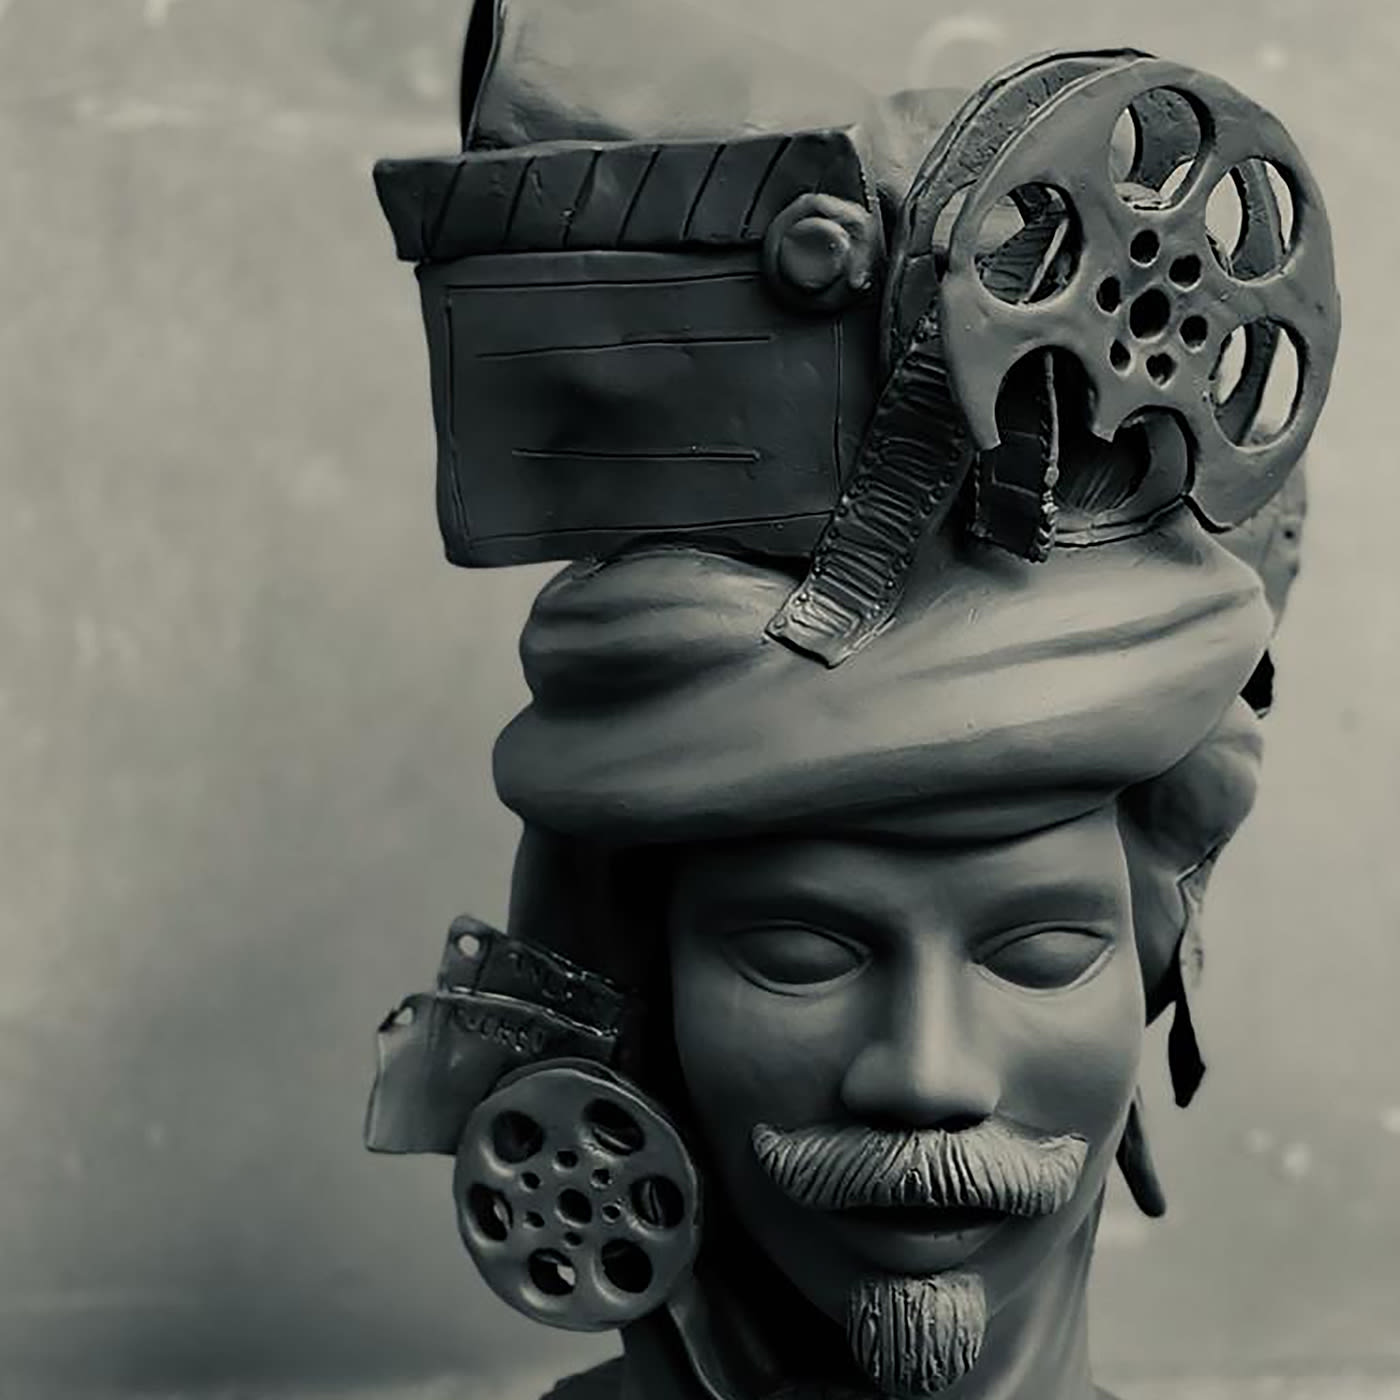 Moor's Head Sculpture in Grey Matte